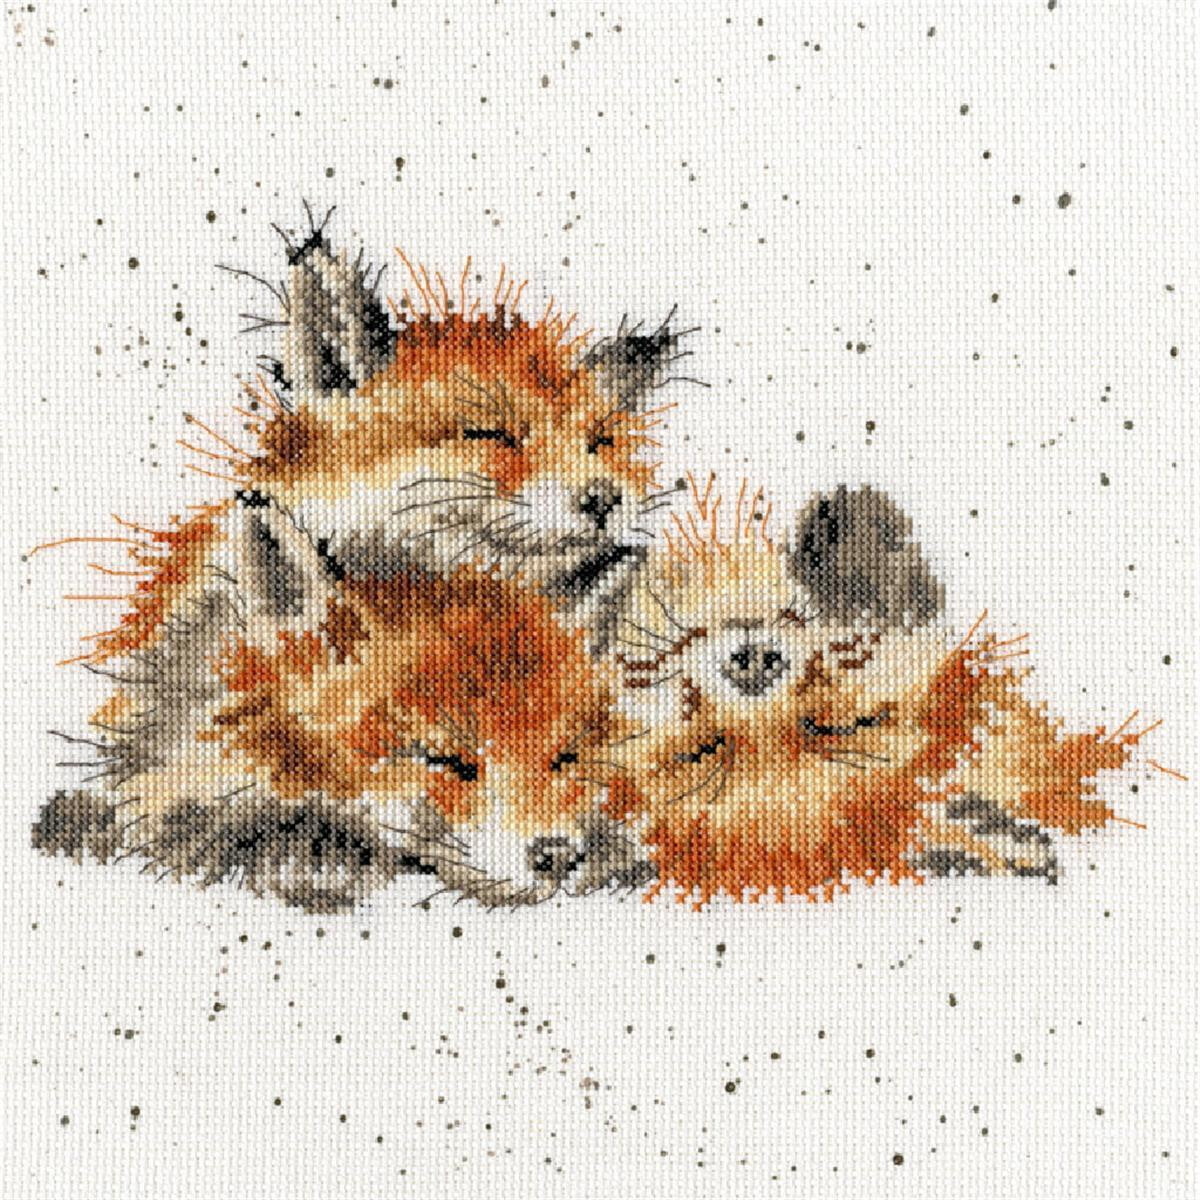 Een borduurpakket van Bothy Threads met drie vossen die...